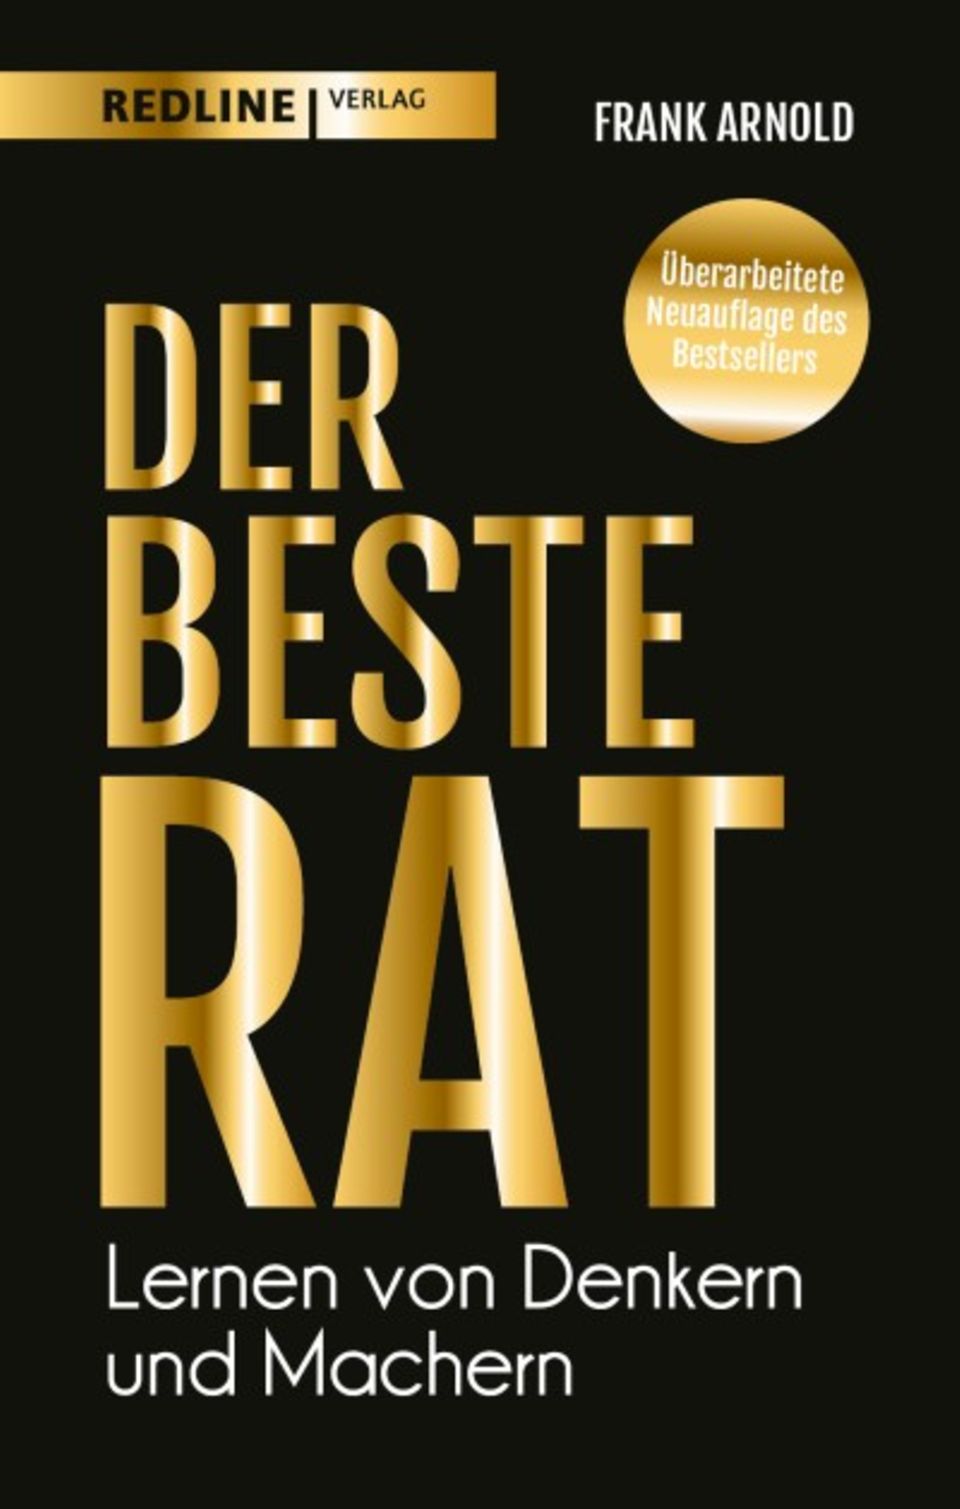 Frank Arnold: Der beste Rat – Lernen von Denkern und Machern, 288 Seiten, gebunden, 20,00 Euro, ISBN: 978-3-86881-868-0, Blick ins Buch